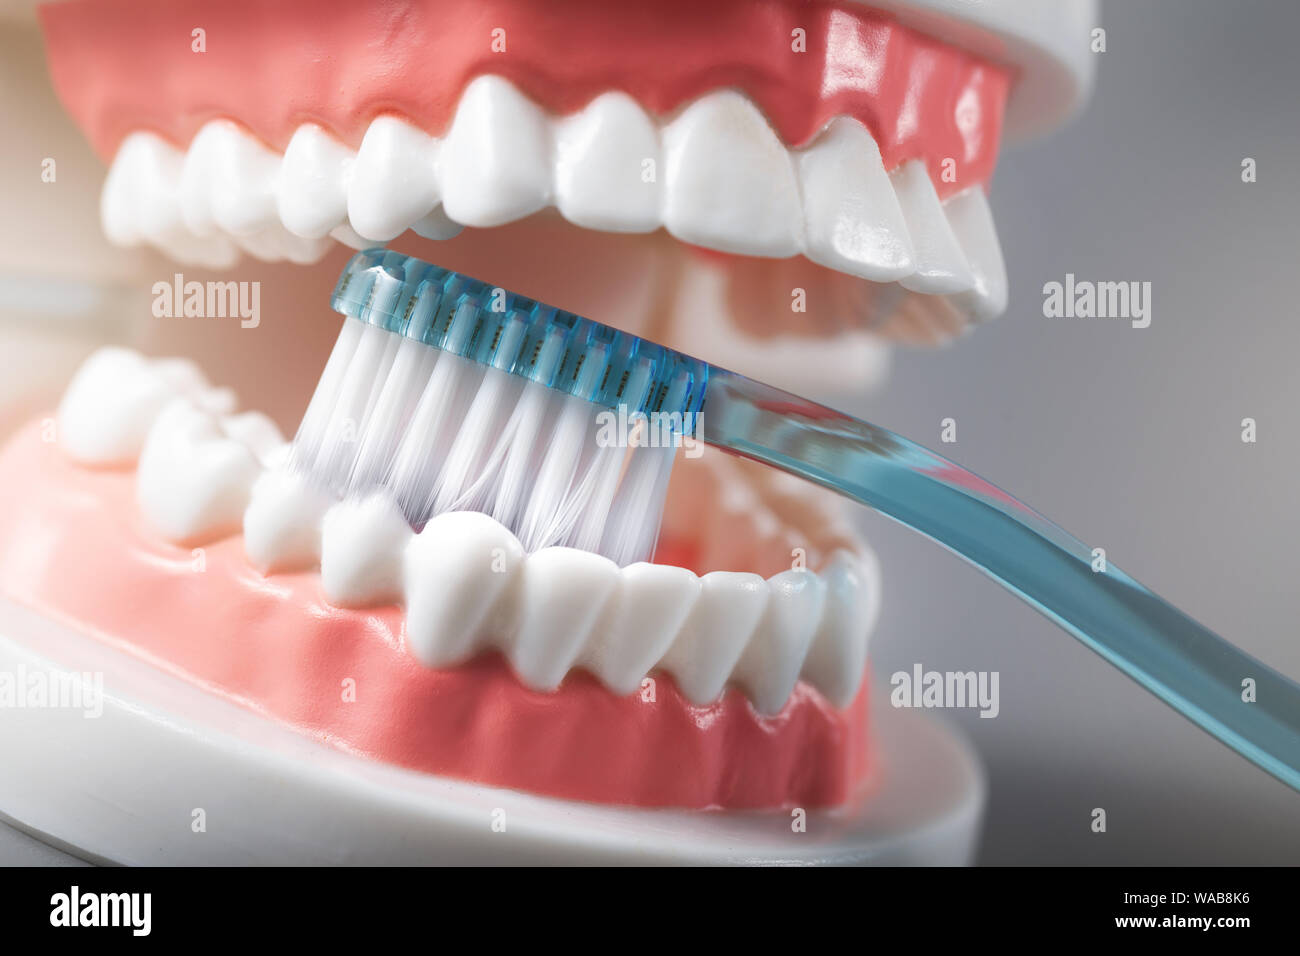 Igiene dentale - spazzolatura dei denti dimostrazione sul modello di denti Foto Stock